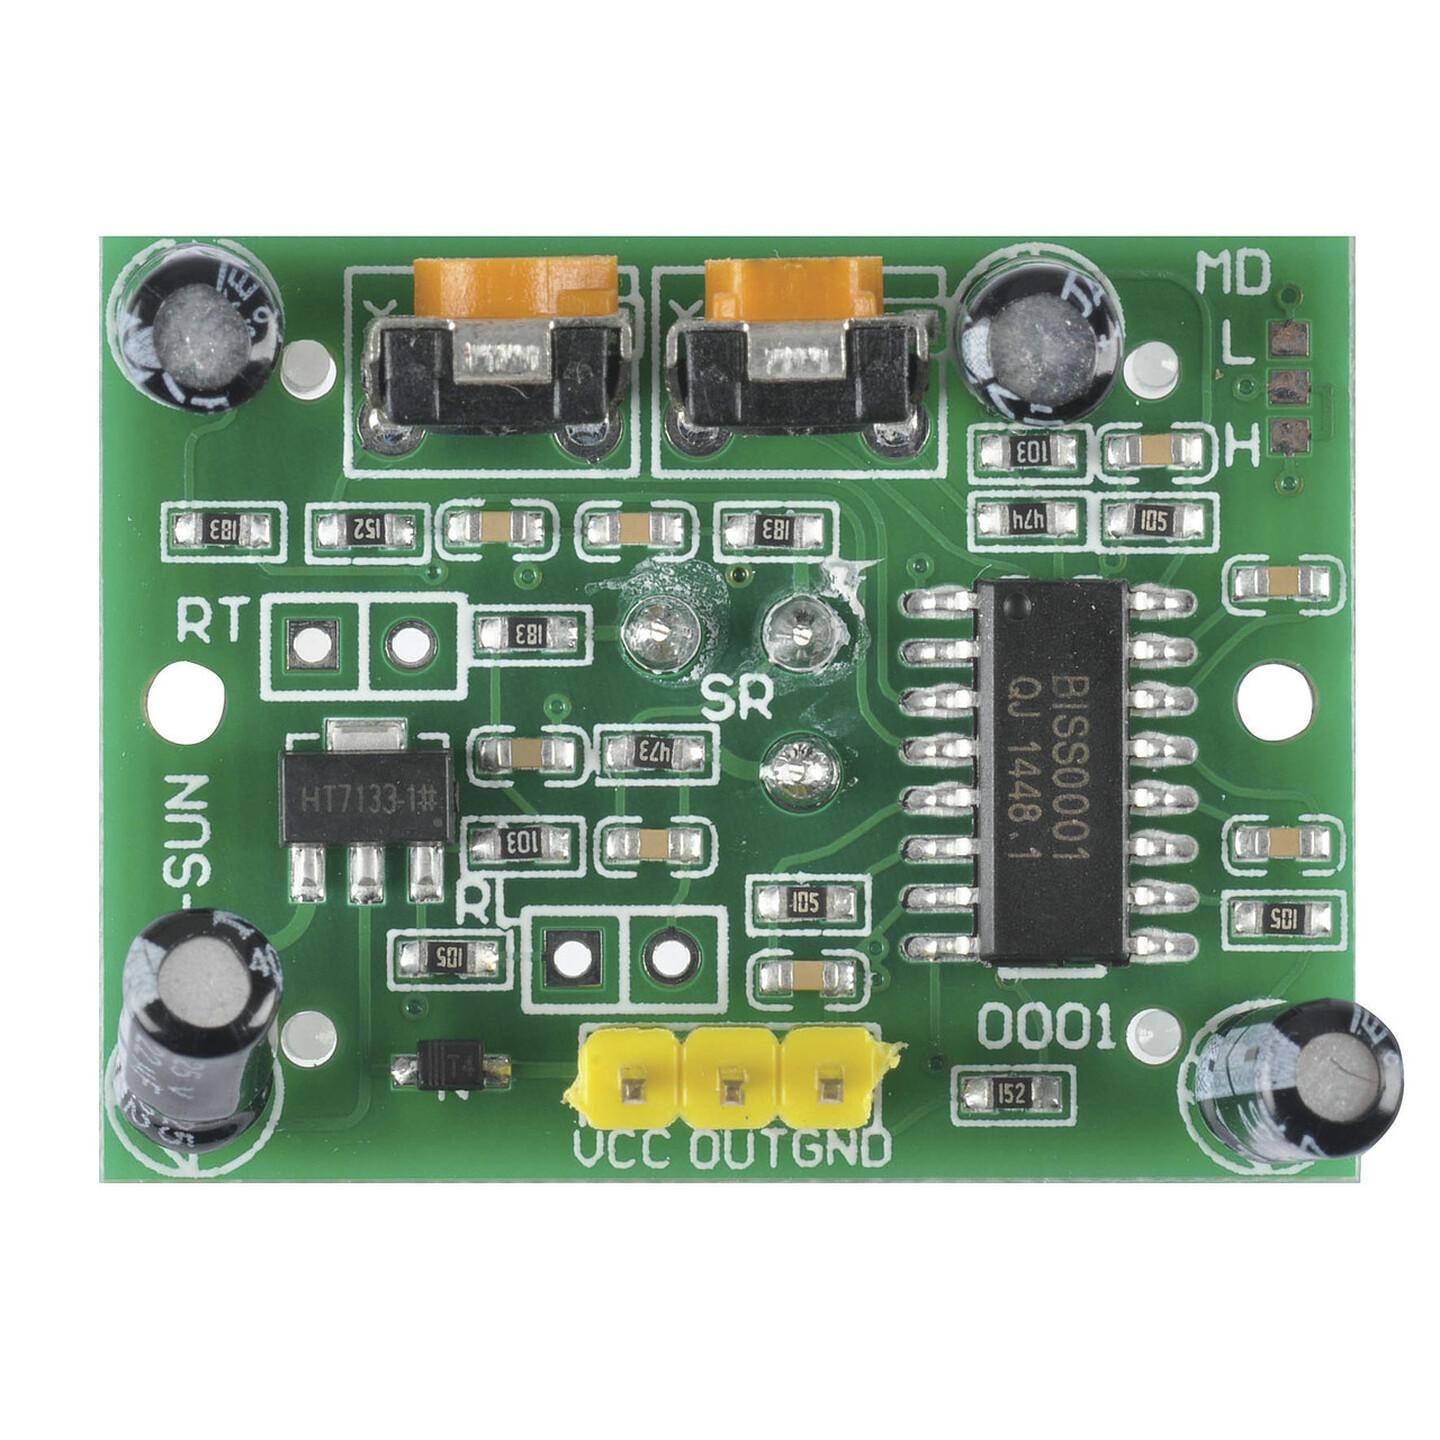 Duinotech Arduino Compatible PIR Motion Detector Module